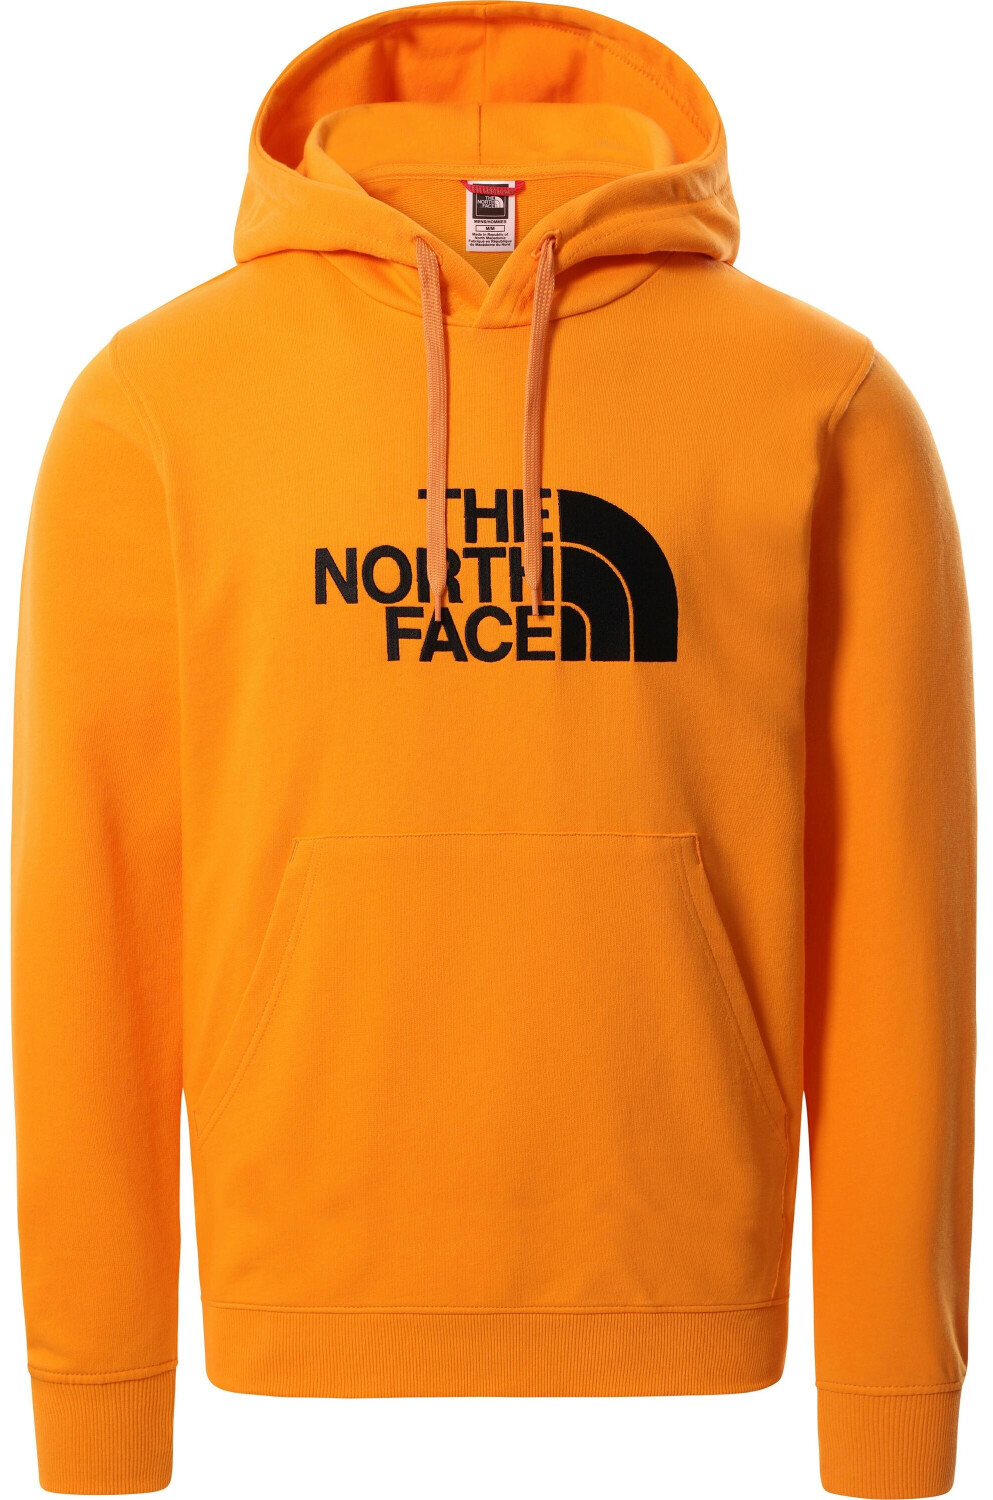 The North Face Men's Light Drew Peak Hoodie exuberance orange ab 83,95